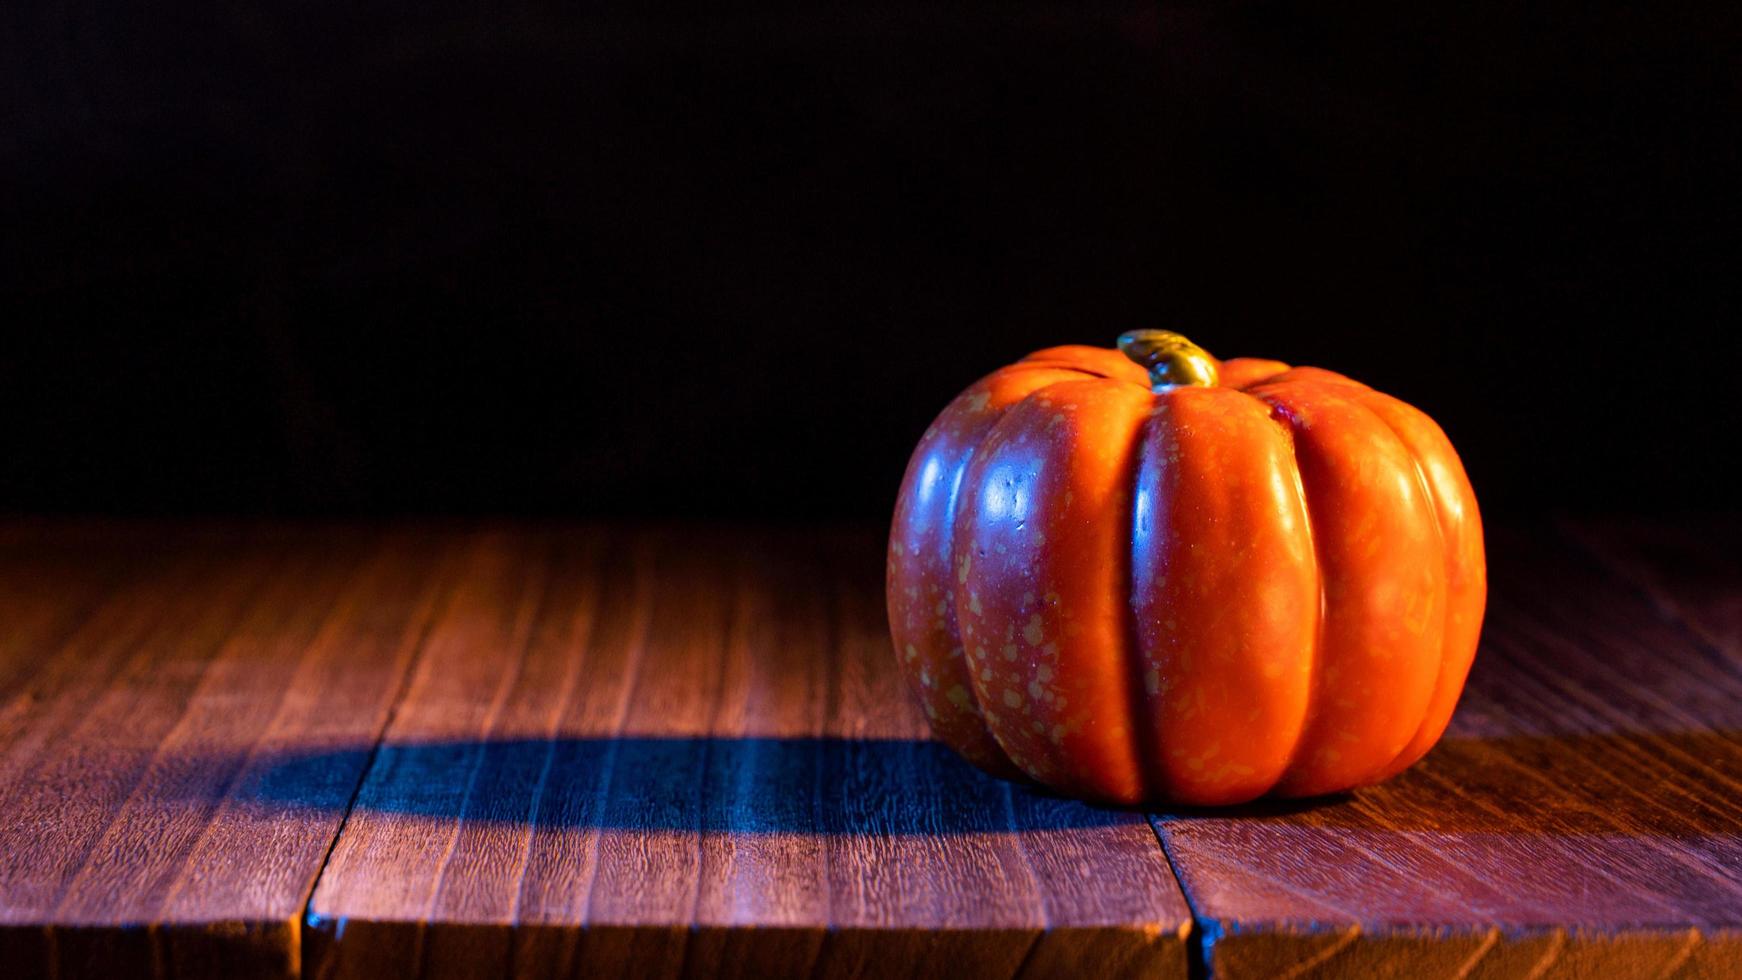 halloween koncept - orange pumpa lykta på ett mörkt träbord med svart bakgrund, trick or treat, närbild. foto